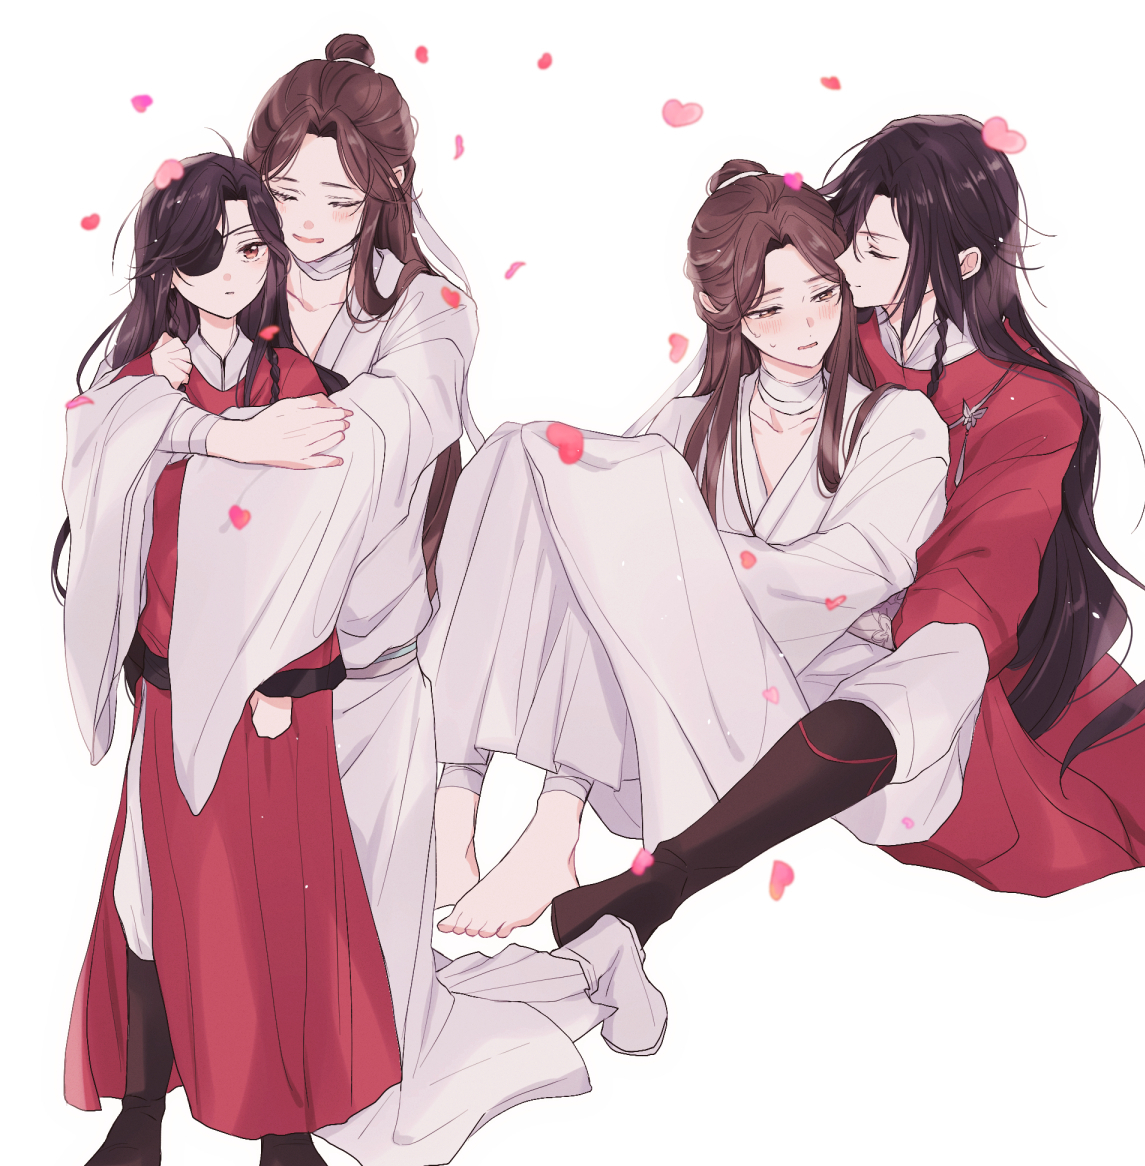 long hair chinese clothes bandages eyepatch multiple boys yaoi hug  illustration images